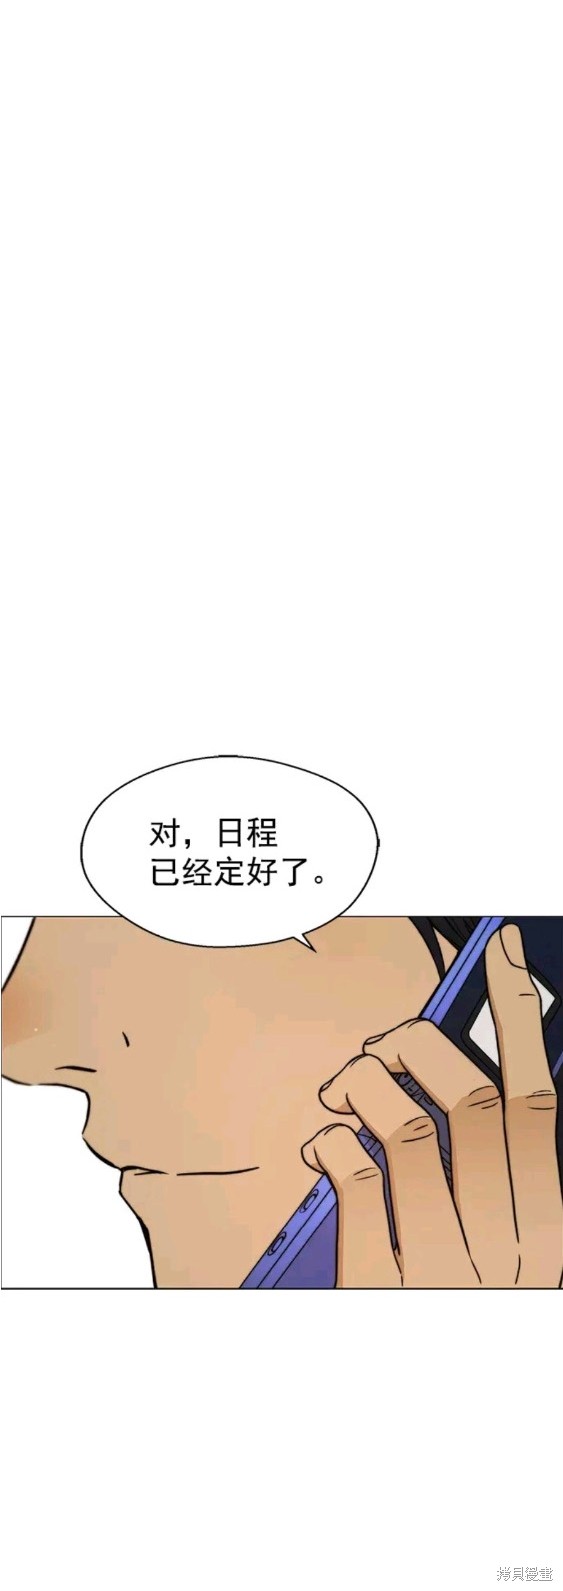 男子汉漫画,第104话11图